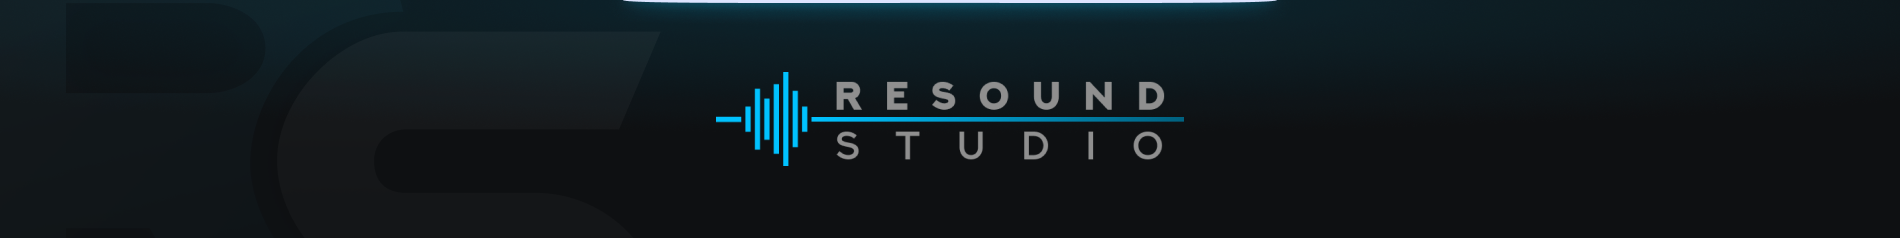 обложка автора ReSound Studio